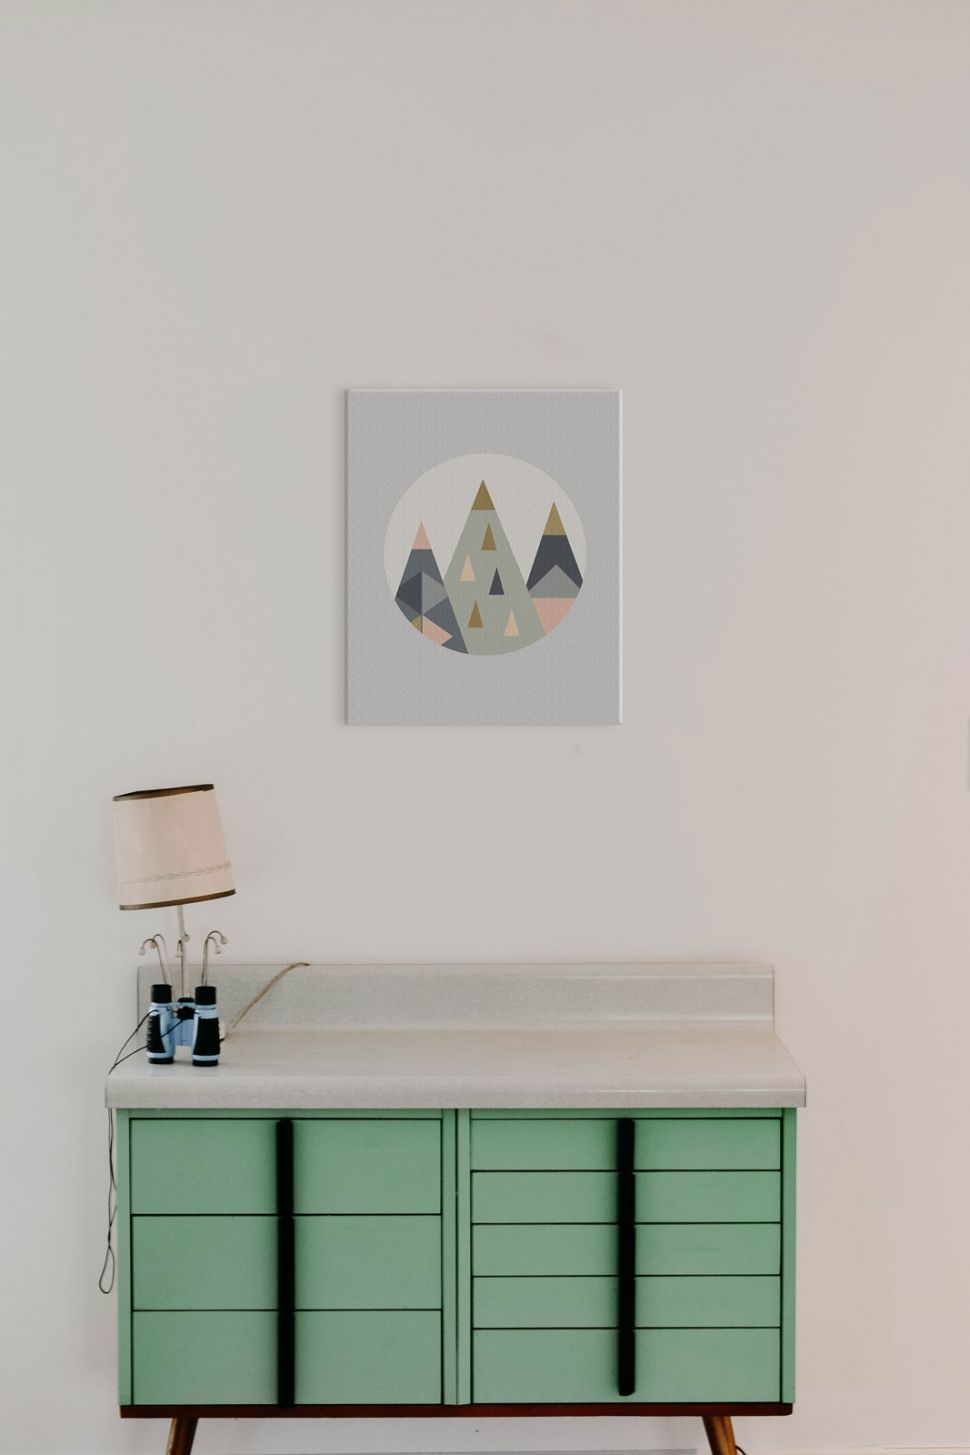 Canvas Trójkątne góry powieszony w pokoju nad zieloną szafką z nocną lampką